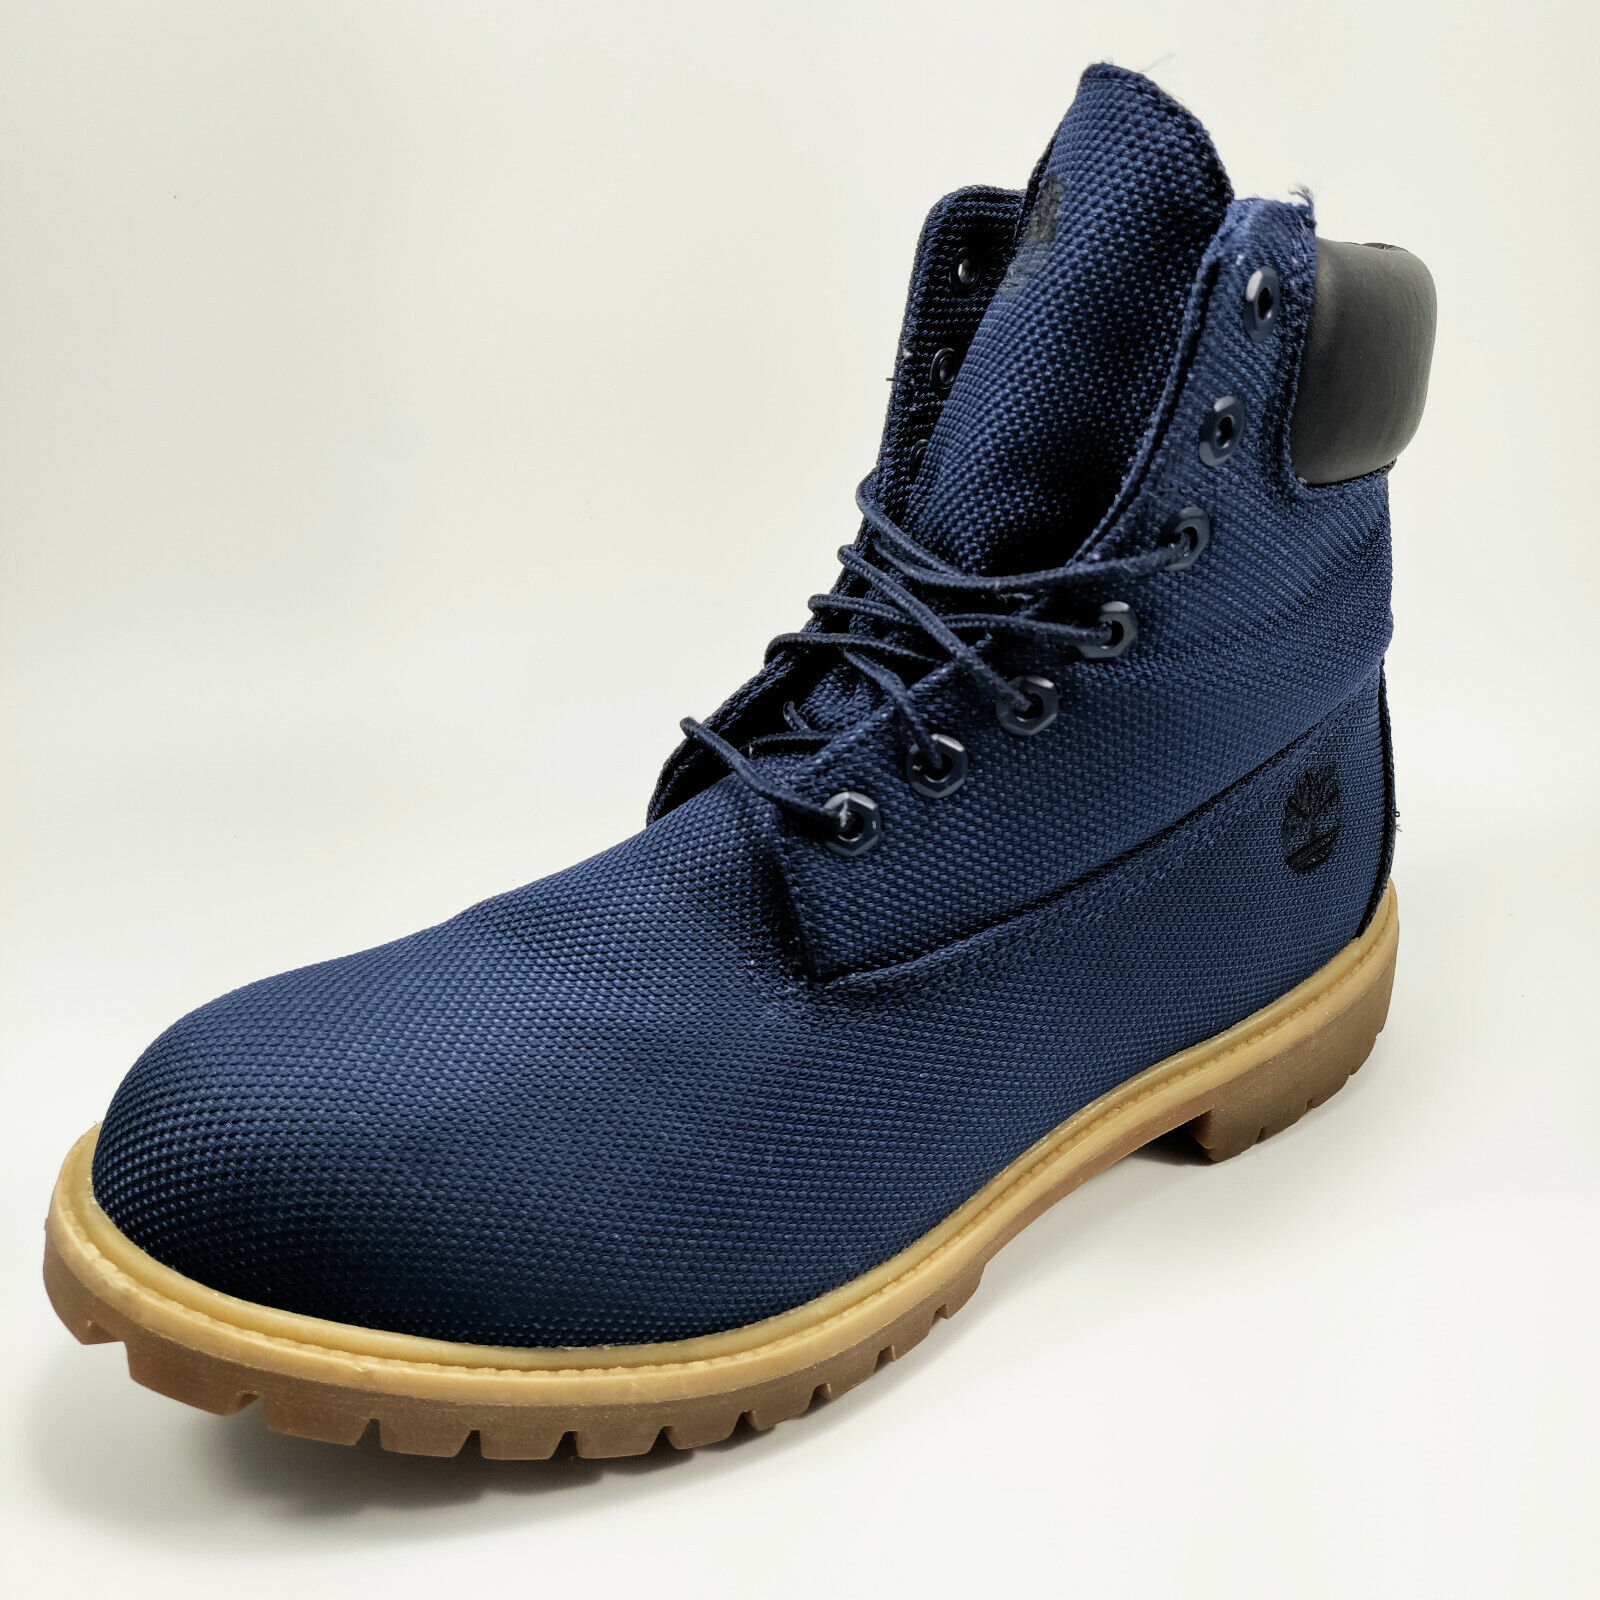 rijk overschot hardwerkend Timberland 6 Inch Premium Waterproof Boots Men's Navy Blue / Tan A1M285140  SZ 12 | eBay